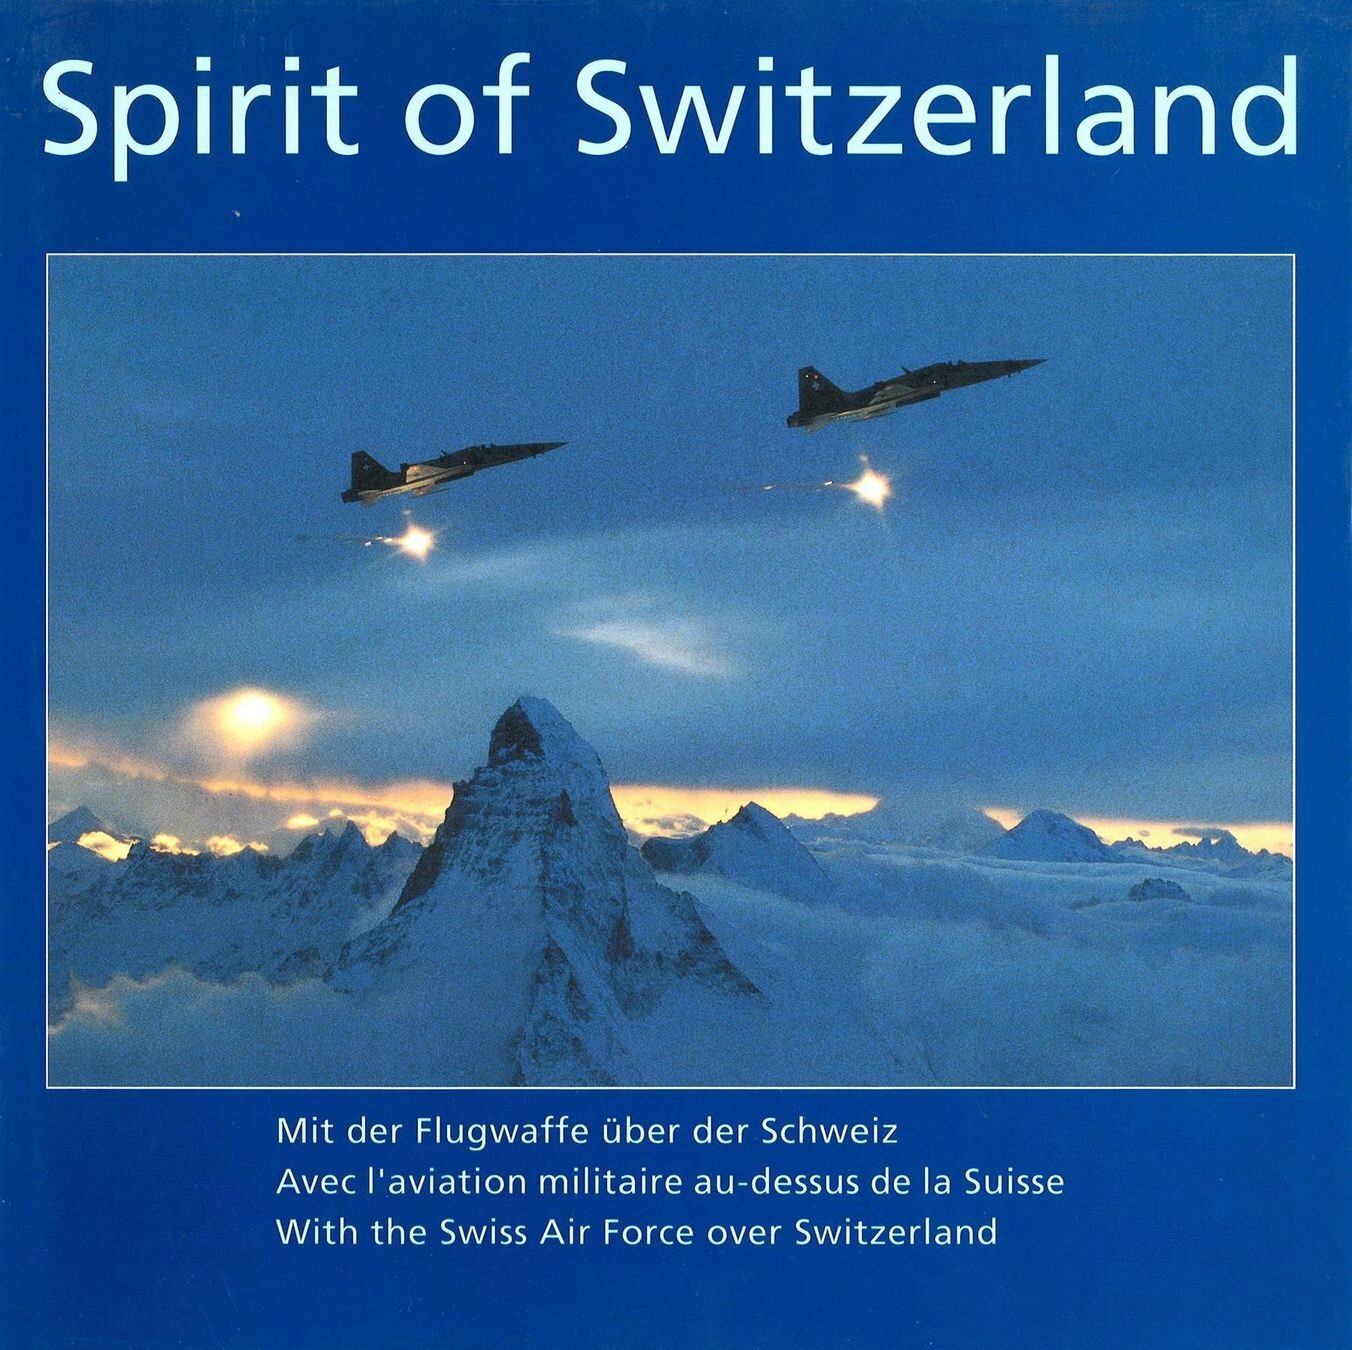 Buch B-332 *Spirit of Switzerland - mit der Luftwaffe über die Schweiz